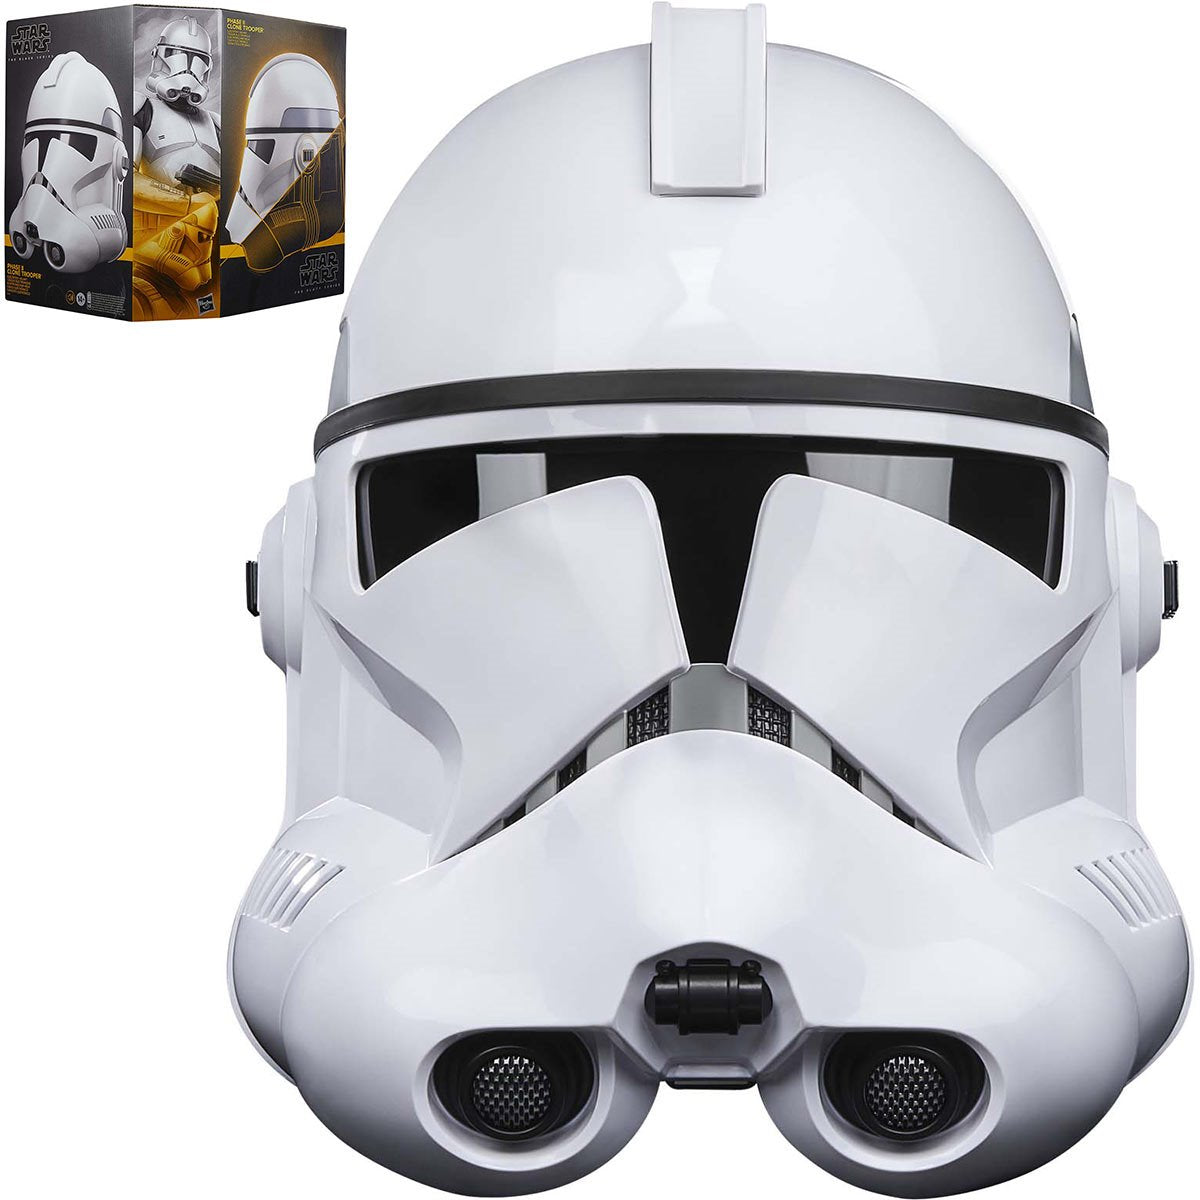 Load image into Gallery viewer, Phase II Clone Trooper Helmet (Star Wars) Black Series Prop Replica
